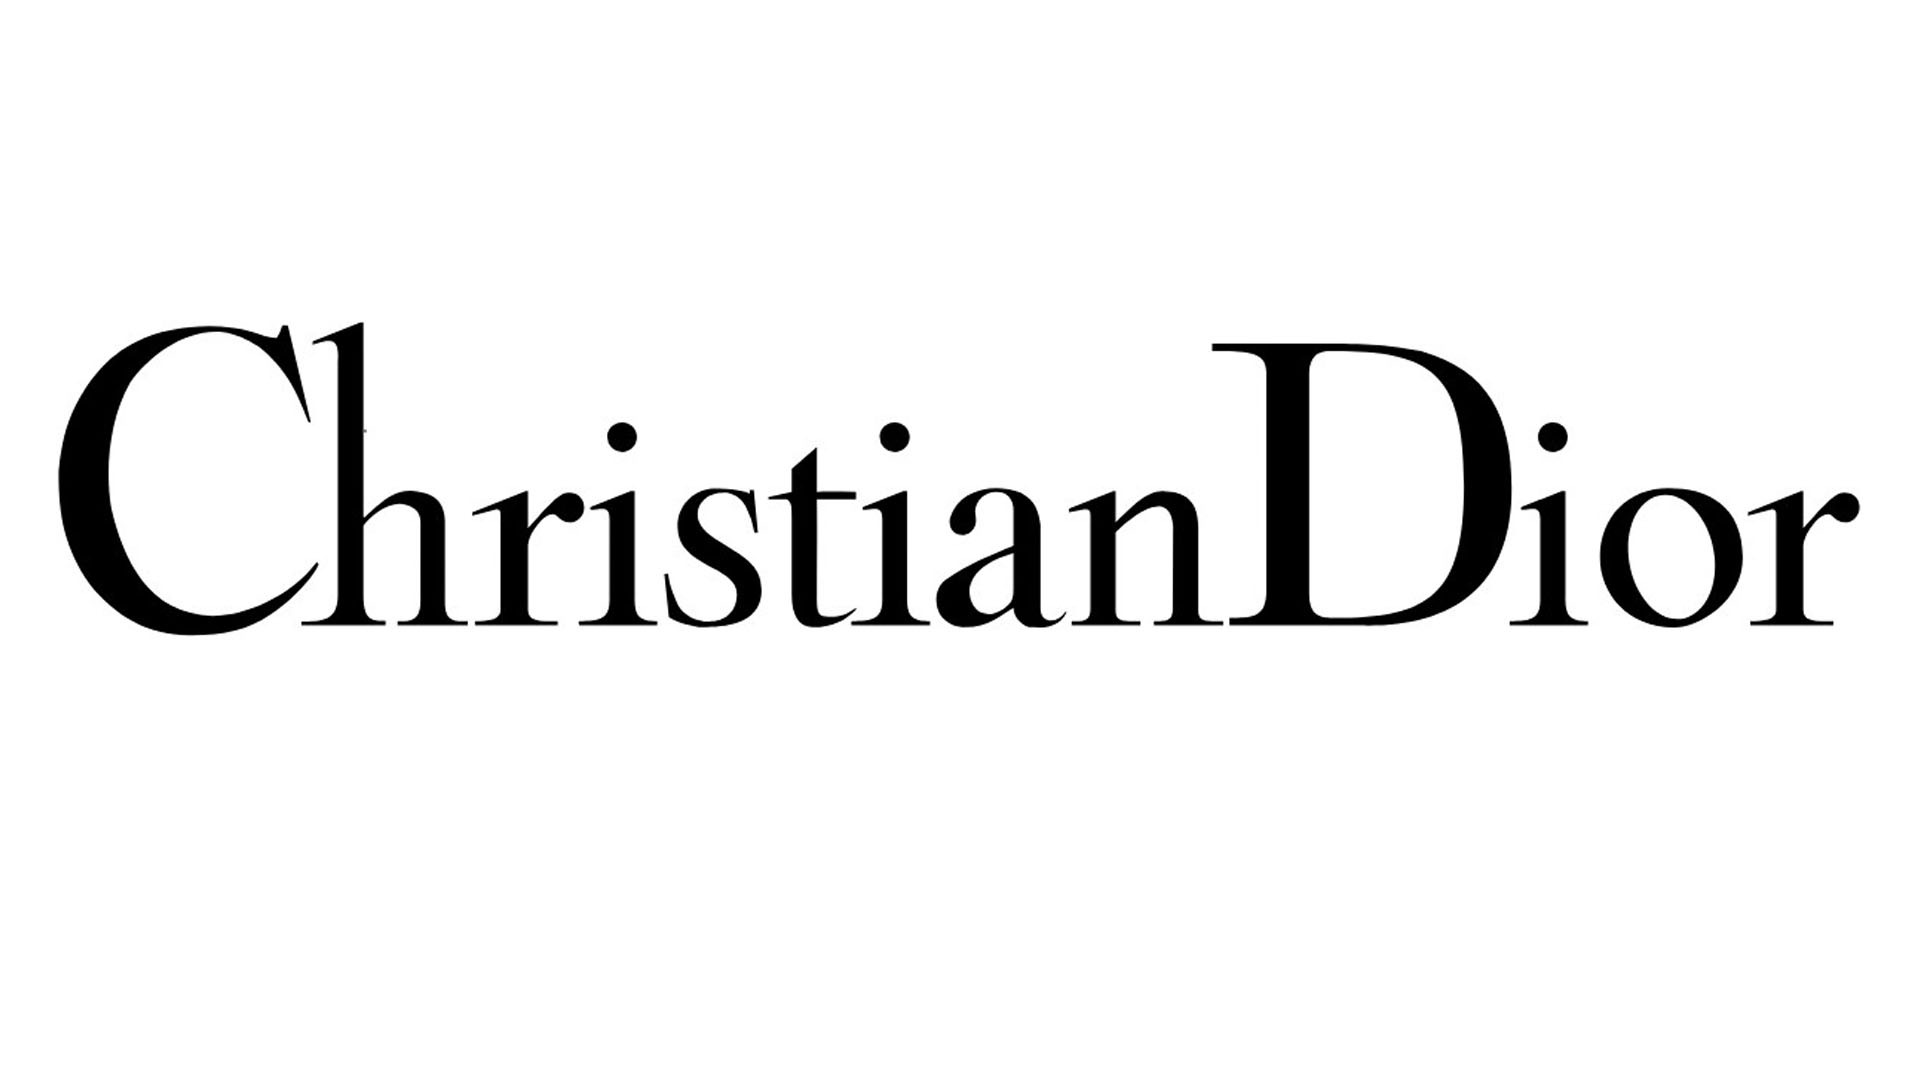 Dior Logo png images  PNGEgg